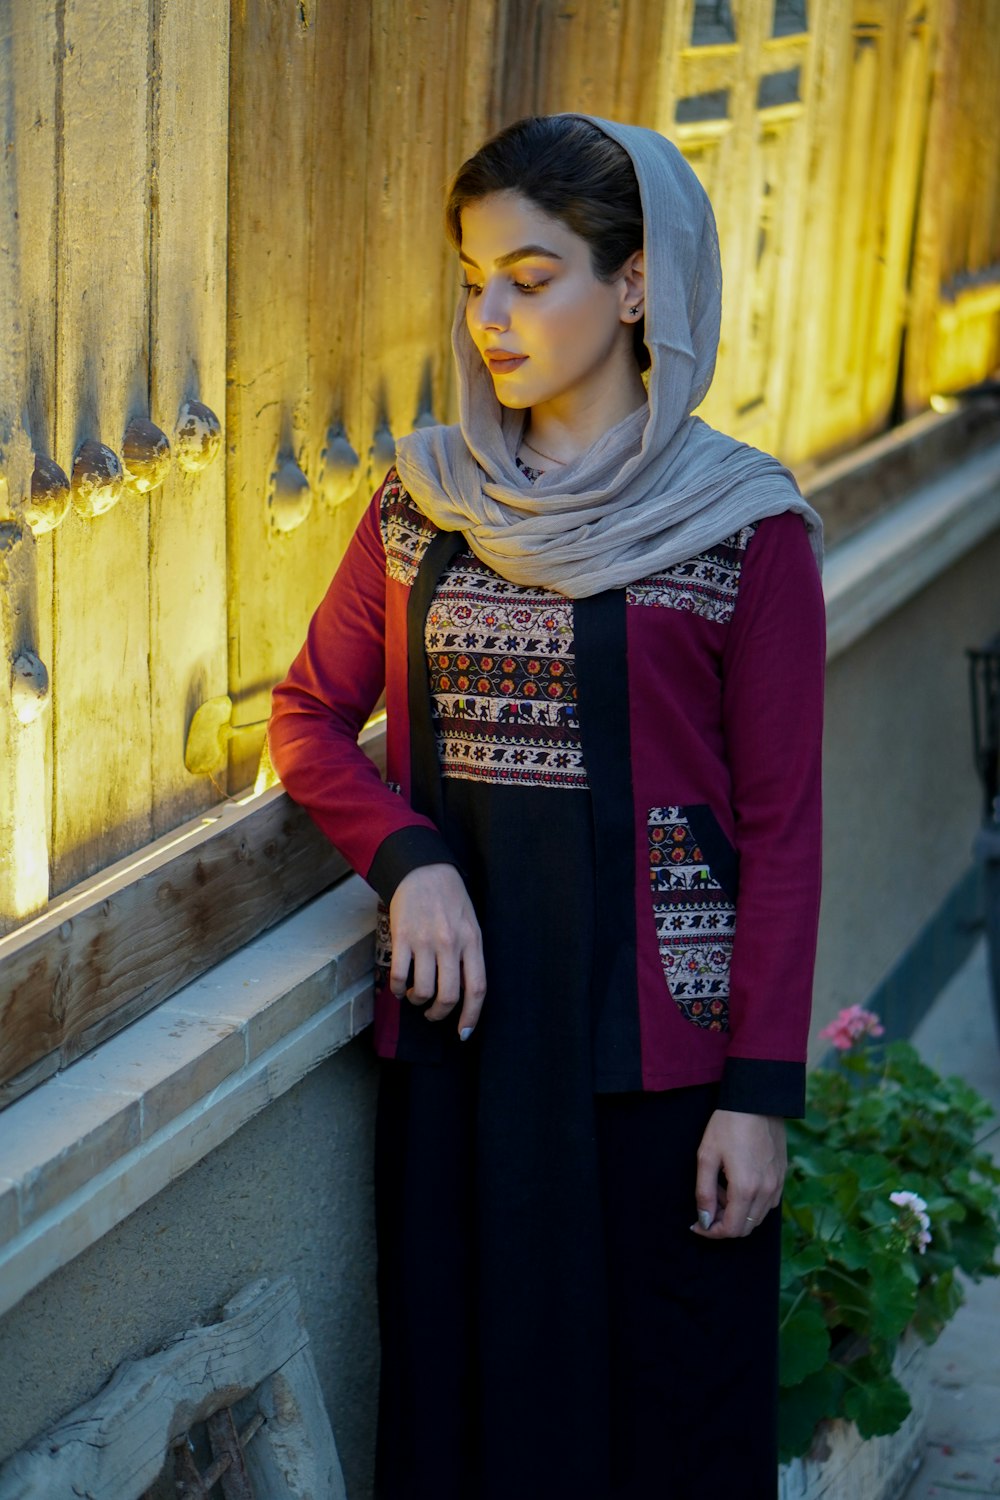 Frau in rotem langärmeligem Kleid mit braunem Hijab steht tagsüber neben einer gelben Holztür